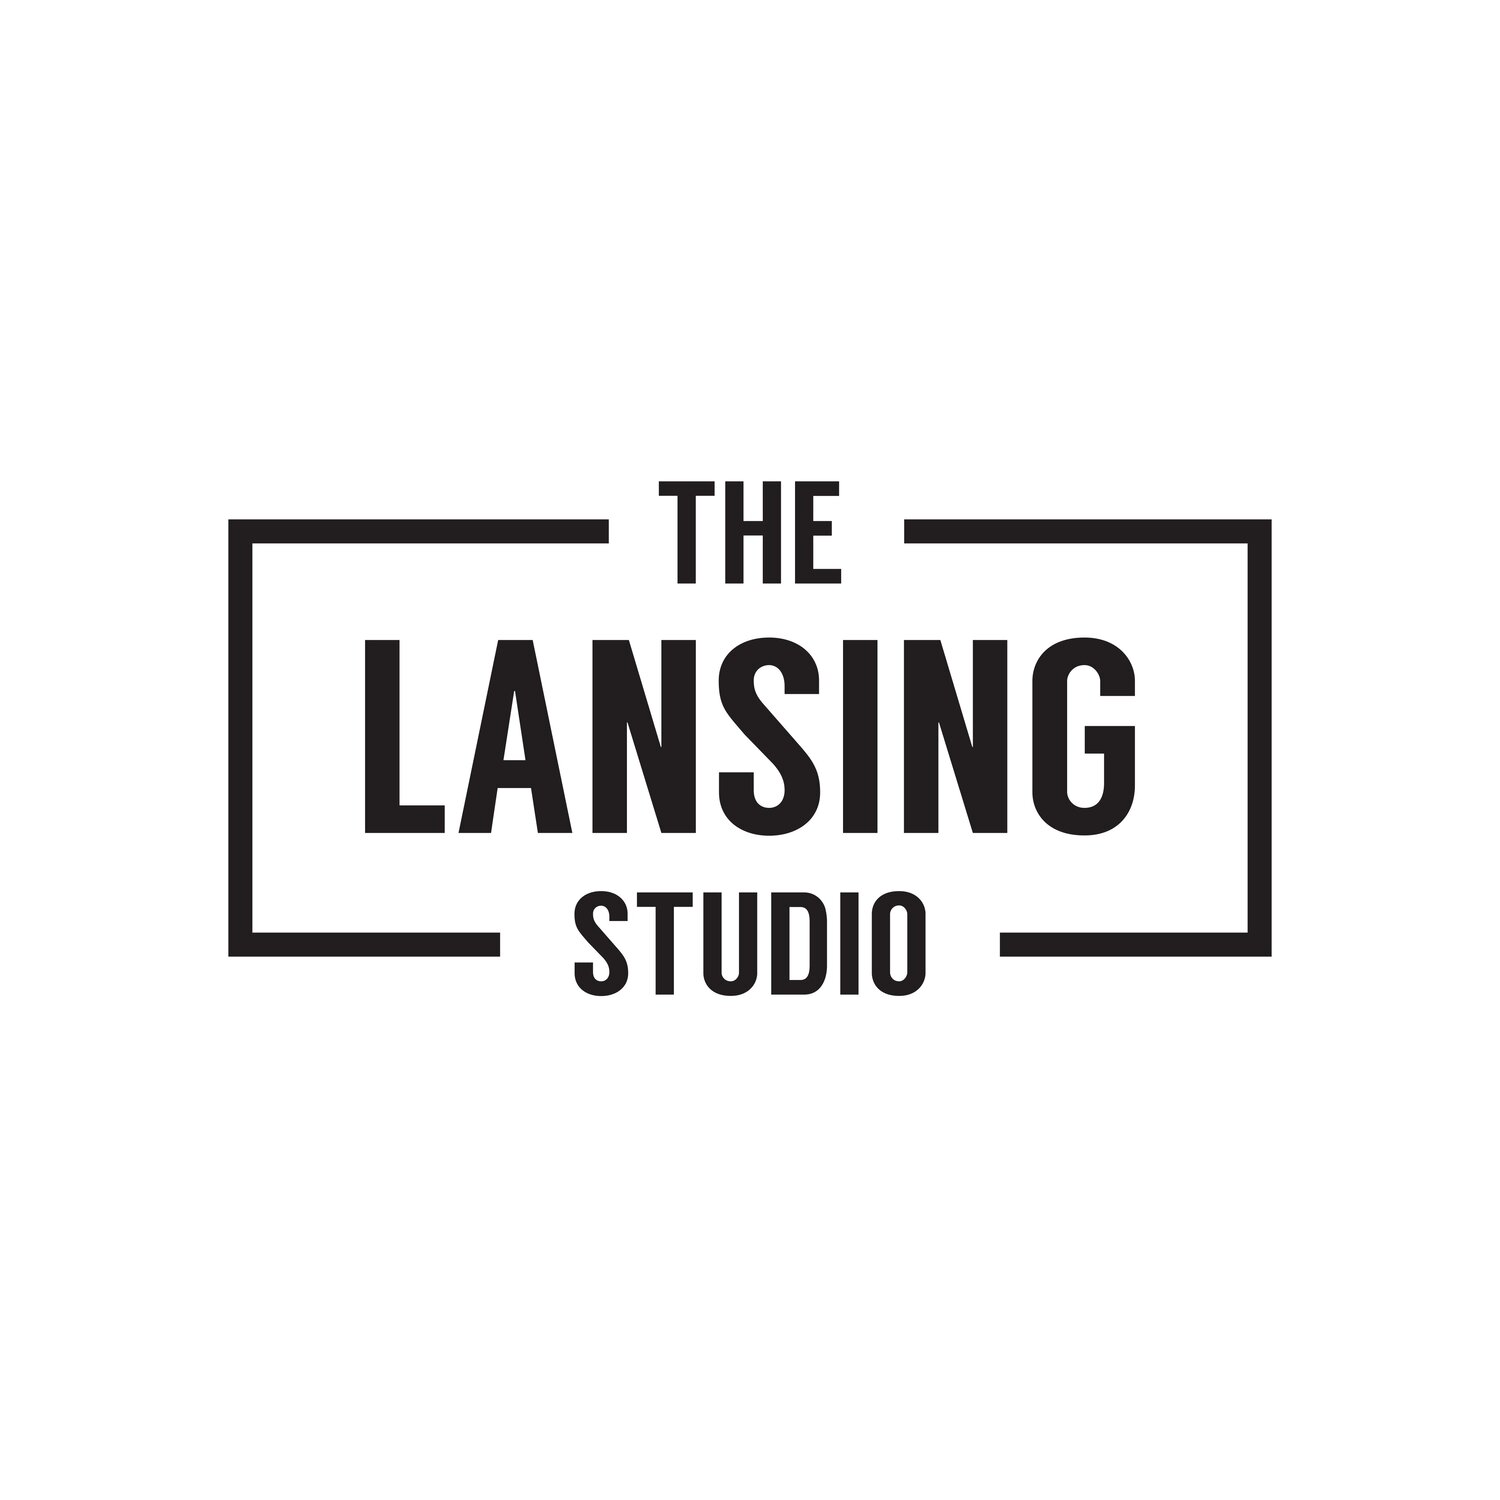 The Lansing Studio